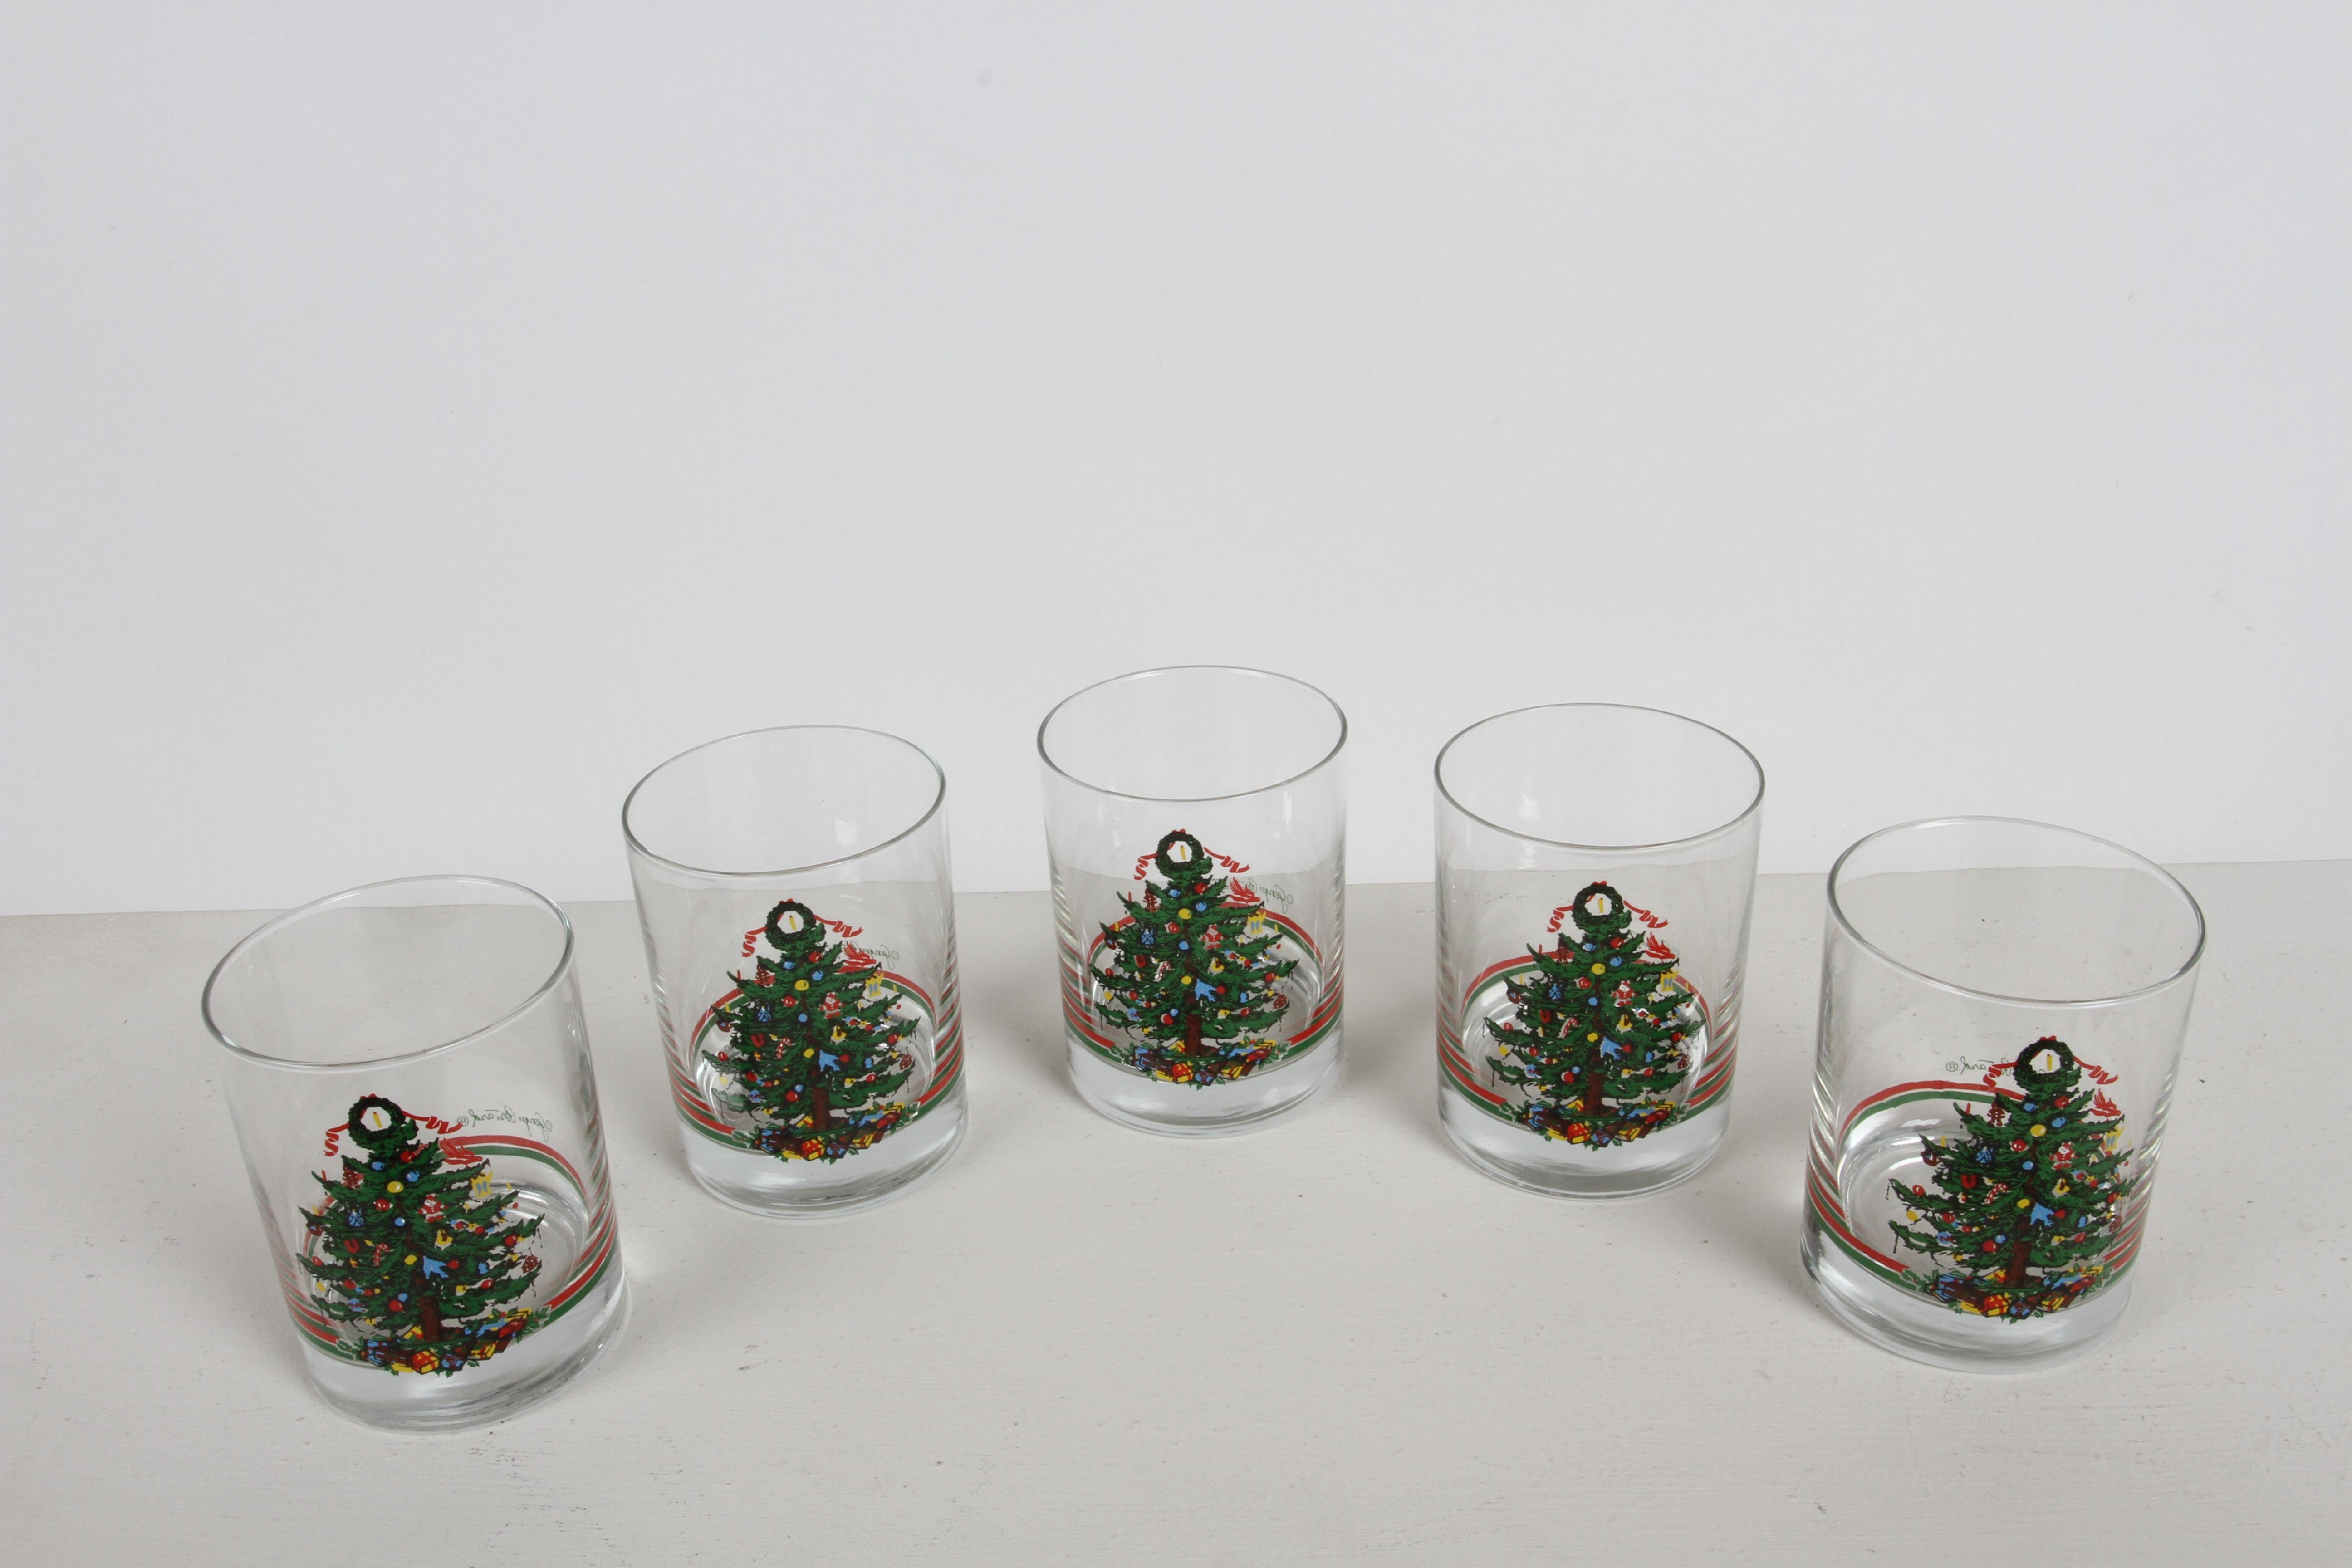 Vasos de bar navideños de la década de 1980 de Georges Briard y vendidos por Neiman Marcus. Juego de 5 copas de piedra, antiguas o de bola baja. Árboles de Navidad adornados con ornamentos, como el hombre de pan de jengibre y bastones de caramelo